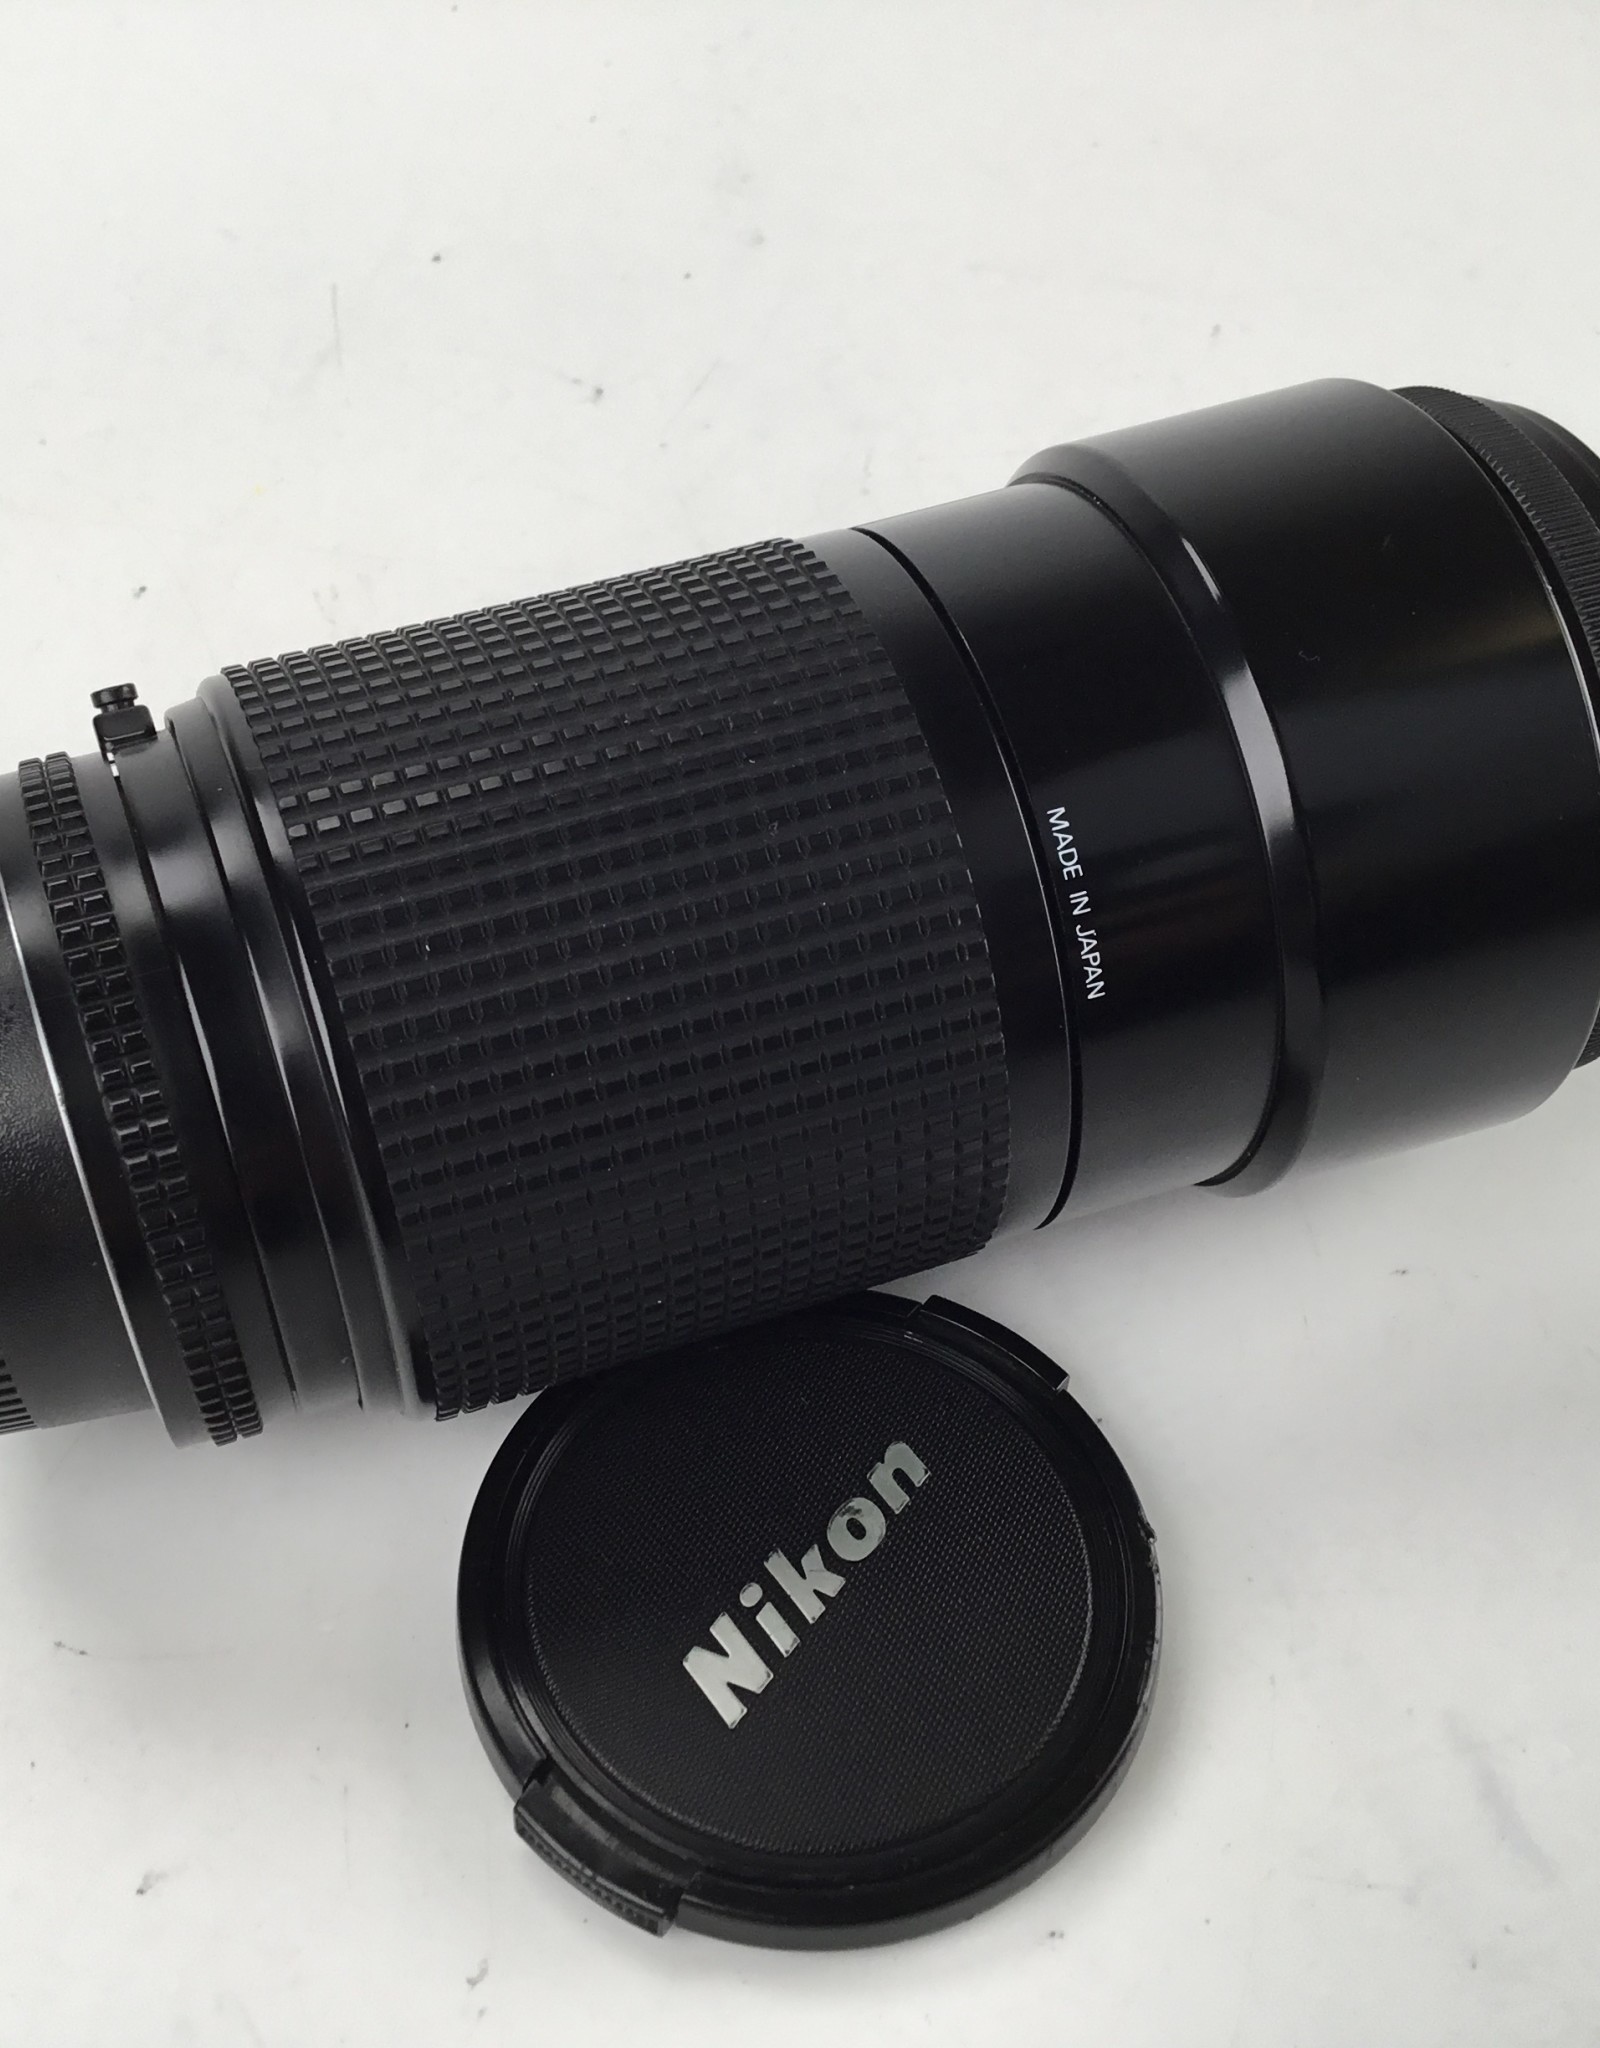 NIKON Nikon AF Nikkor 70-210mm f4 Lens Used Good